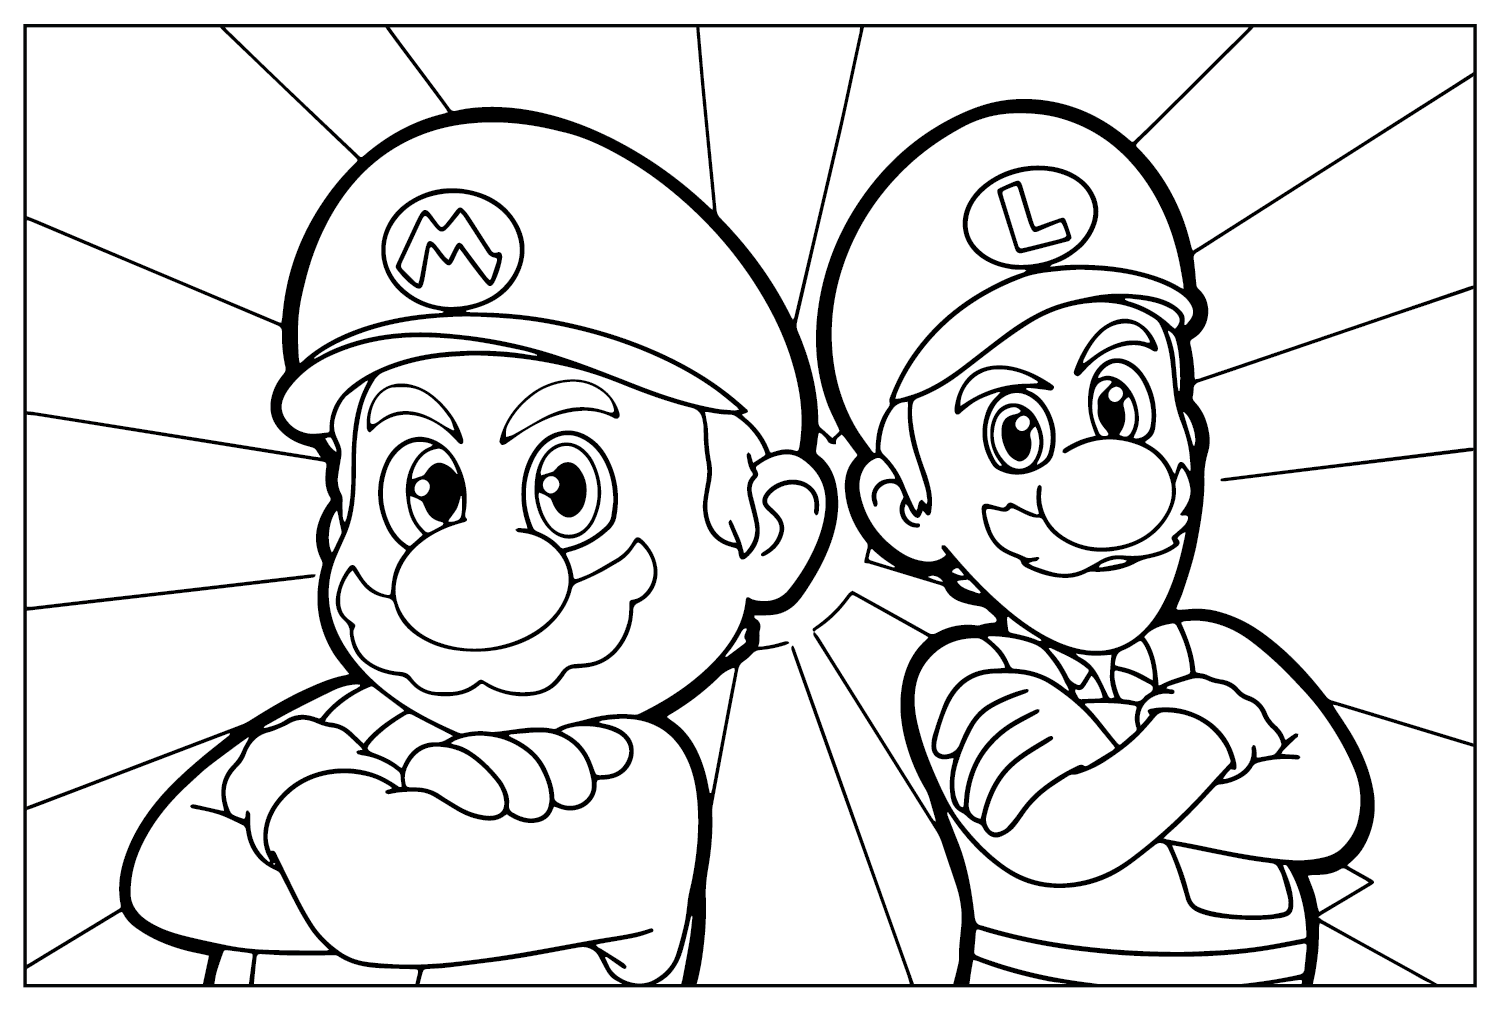 Раскраска Марио и Луиджи из фильма Super Mario Bros.